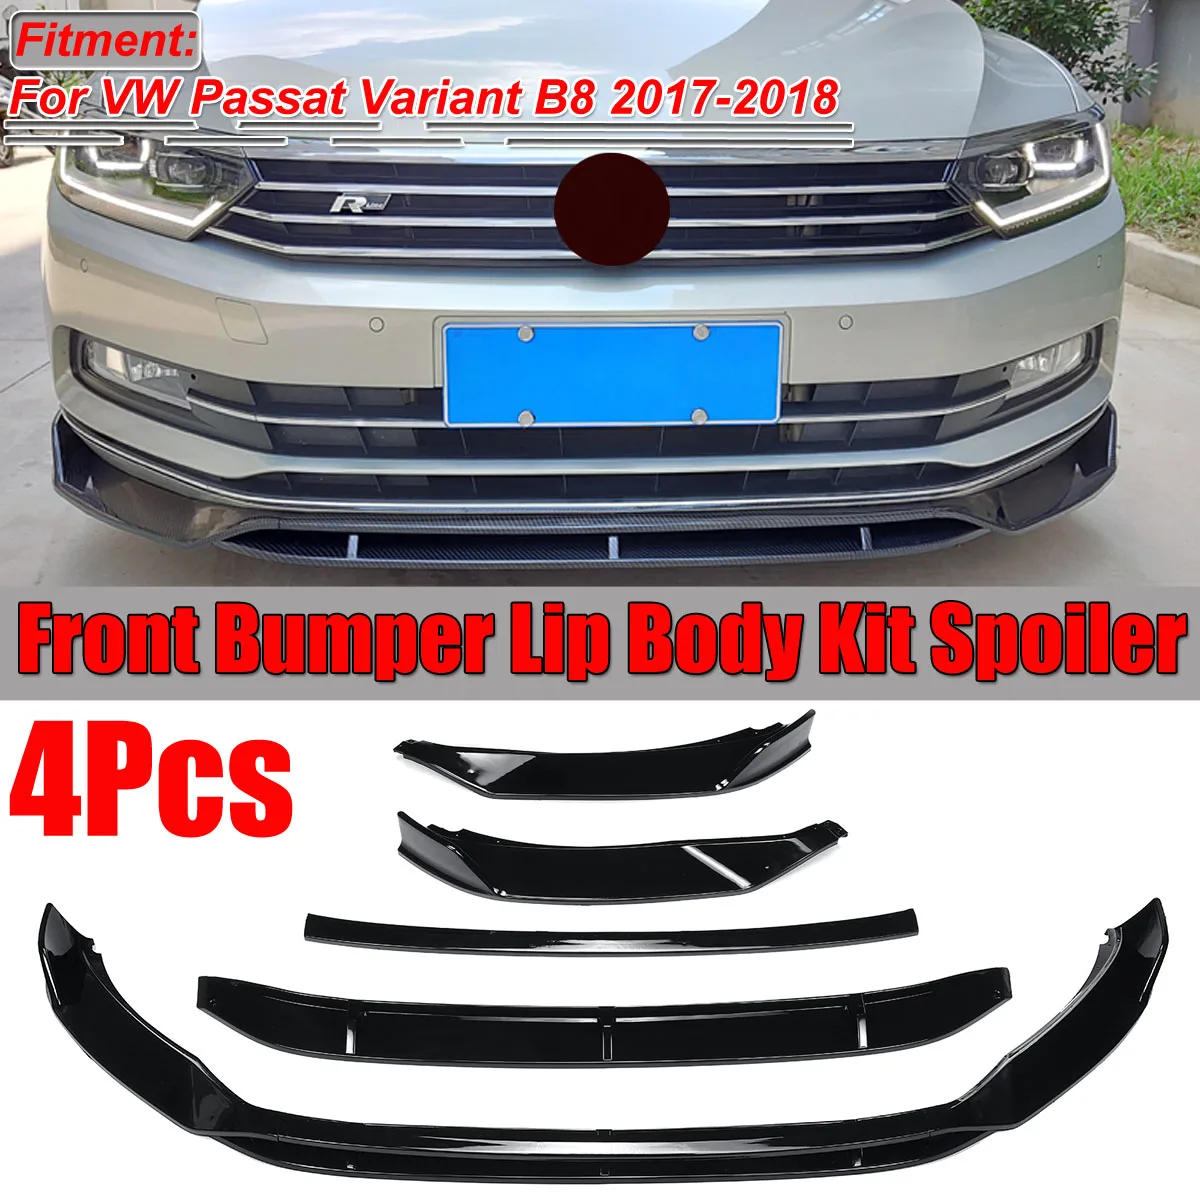 

4Pcs Carbon Fiber Look / Black Car Front Bumper Splitter Lip Spoiler Diffuser Cover Protector For VW Passat Variant B8 2017-2018